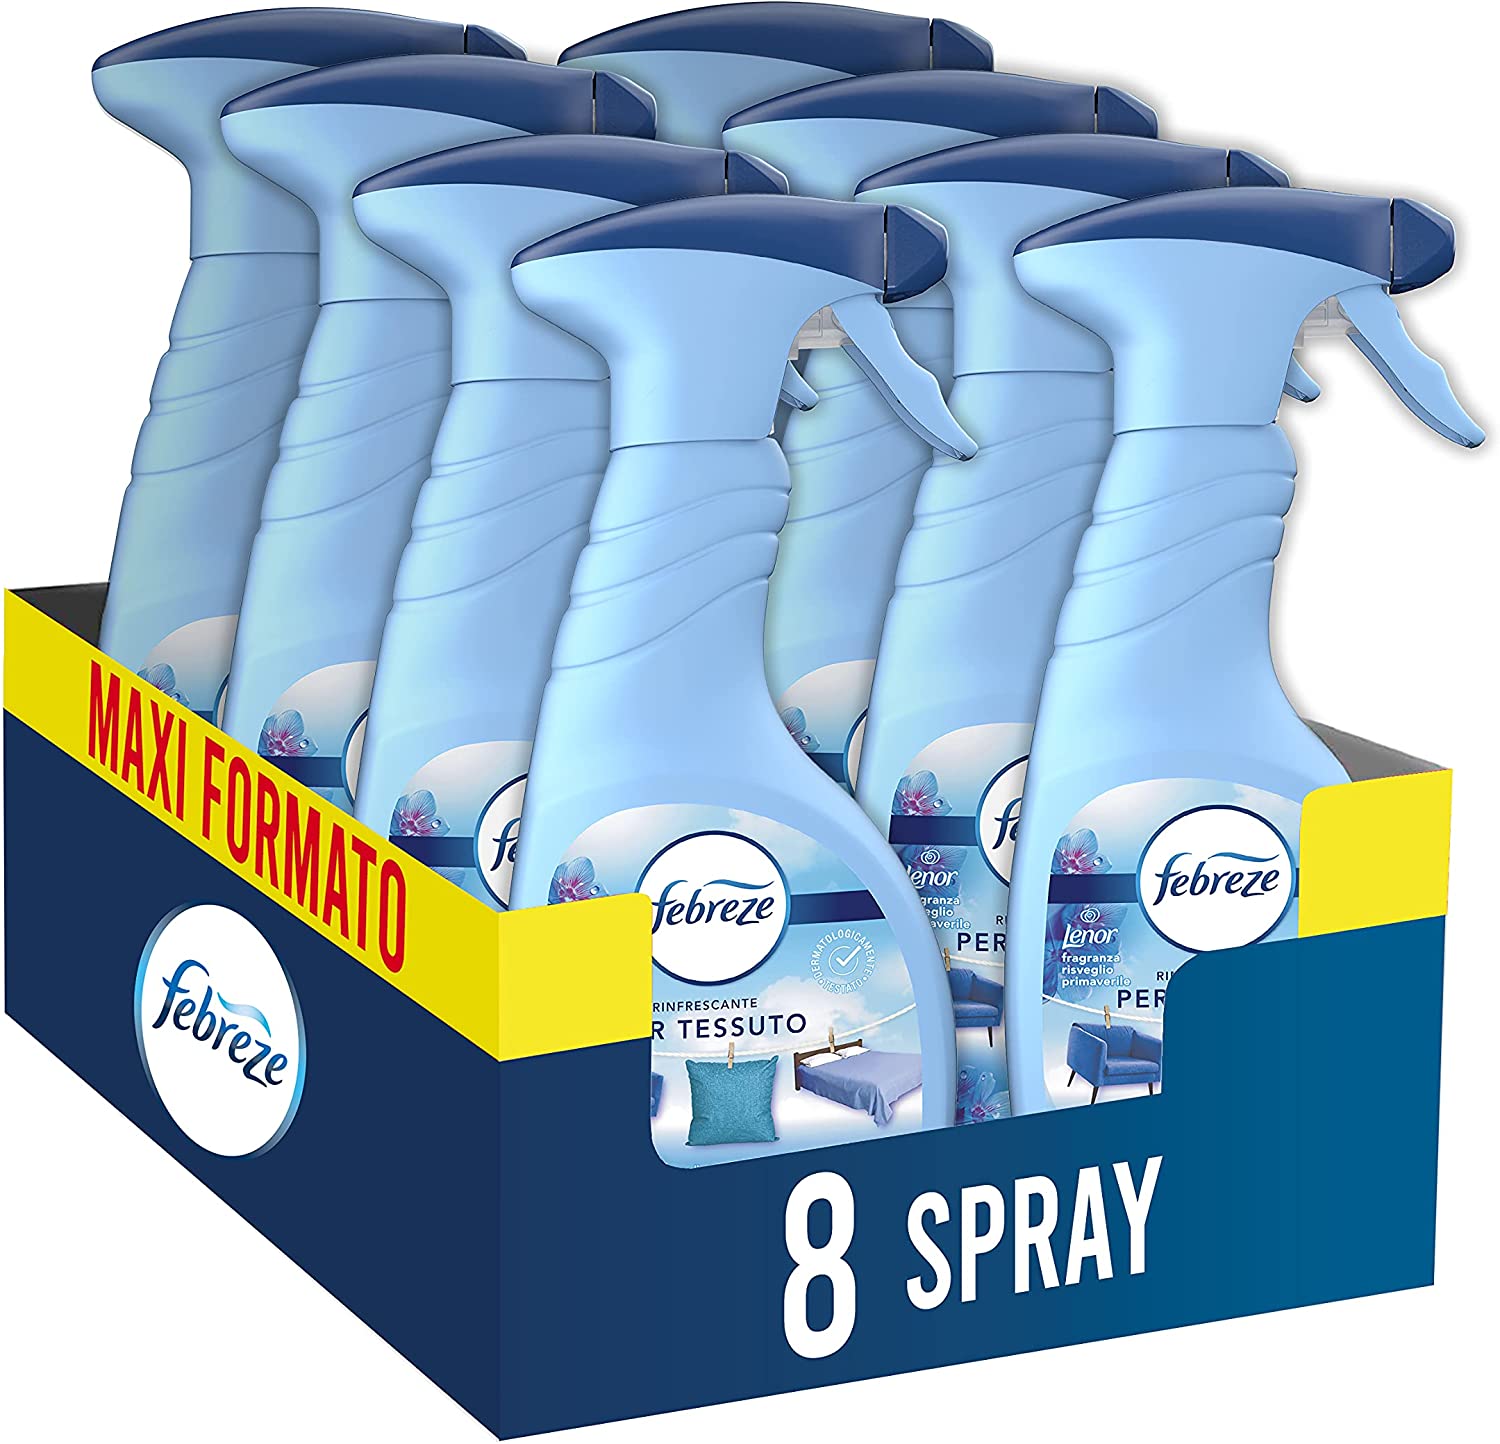 Febreze Spray Profumatore Armadio, Profumo di Lenor Risveglio Primevarile,  Maxi Formato, Elimina gli Odori Forti e Persistenti, Adatto sui Tessuti